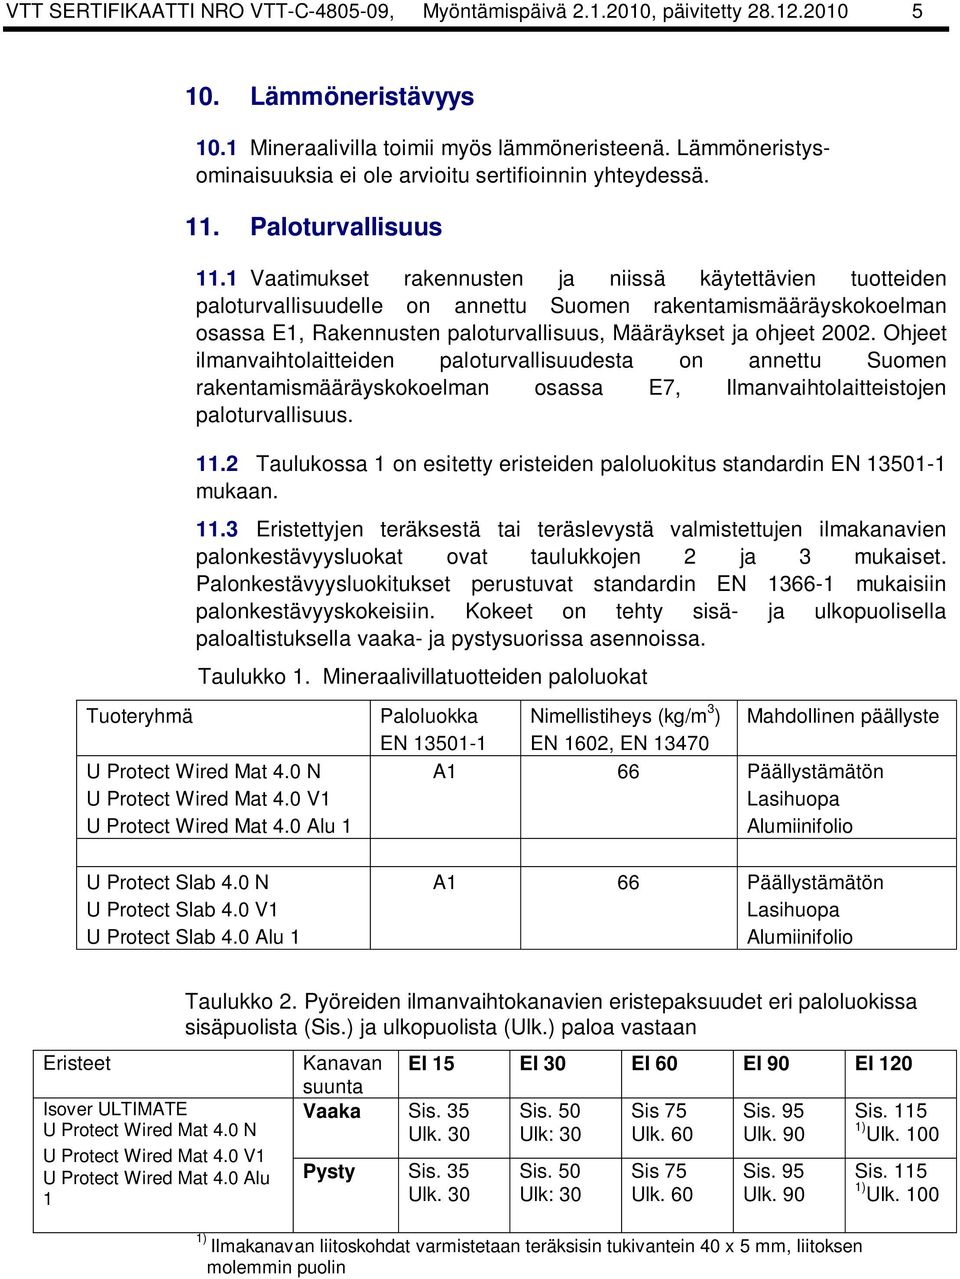 1 Vaatimukset rakennusten ja niissä käytettävien tuotteiden paloturvallisuudelle on annettu Suomen rakentamismääräyskokoelman osassa E1, Rakennusten paloturvallisuus, Määräykset ja ohjeet 2002.